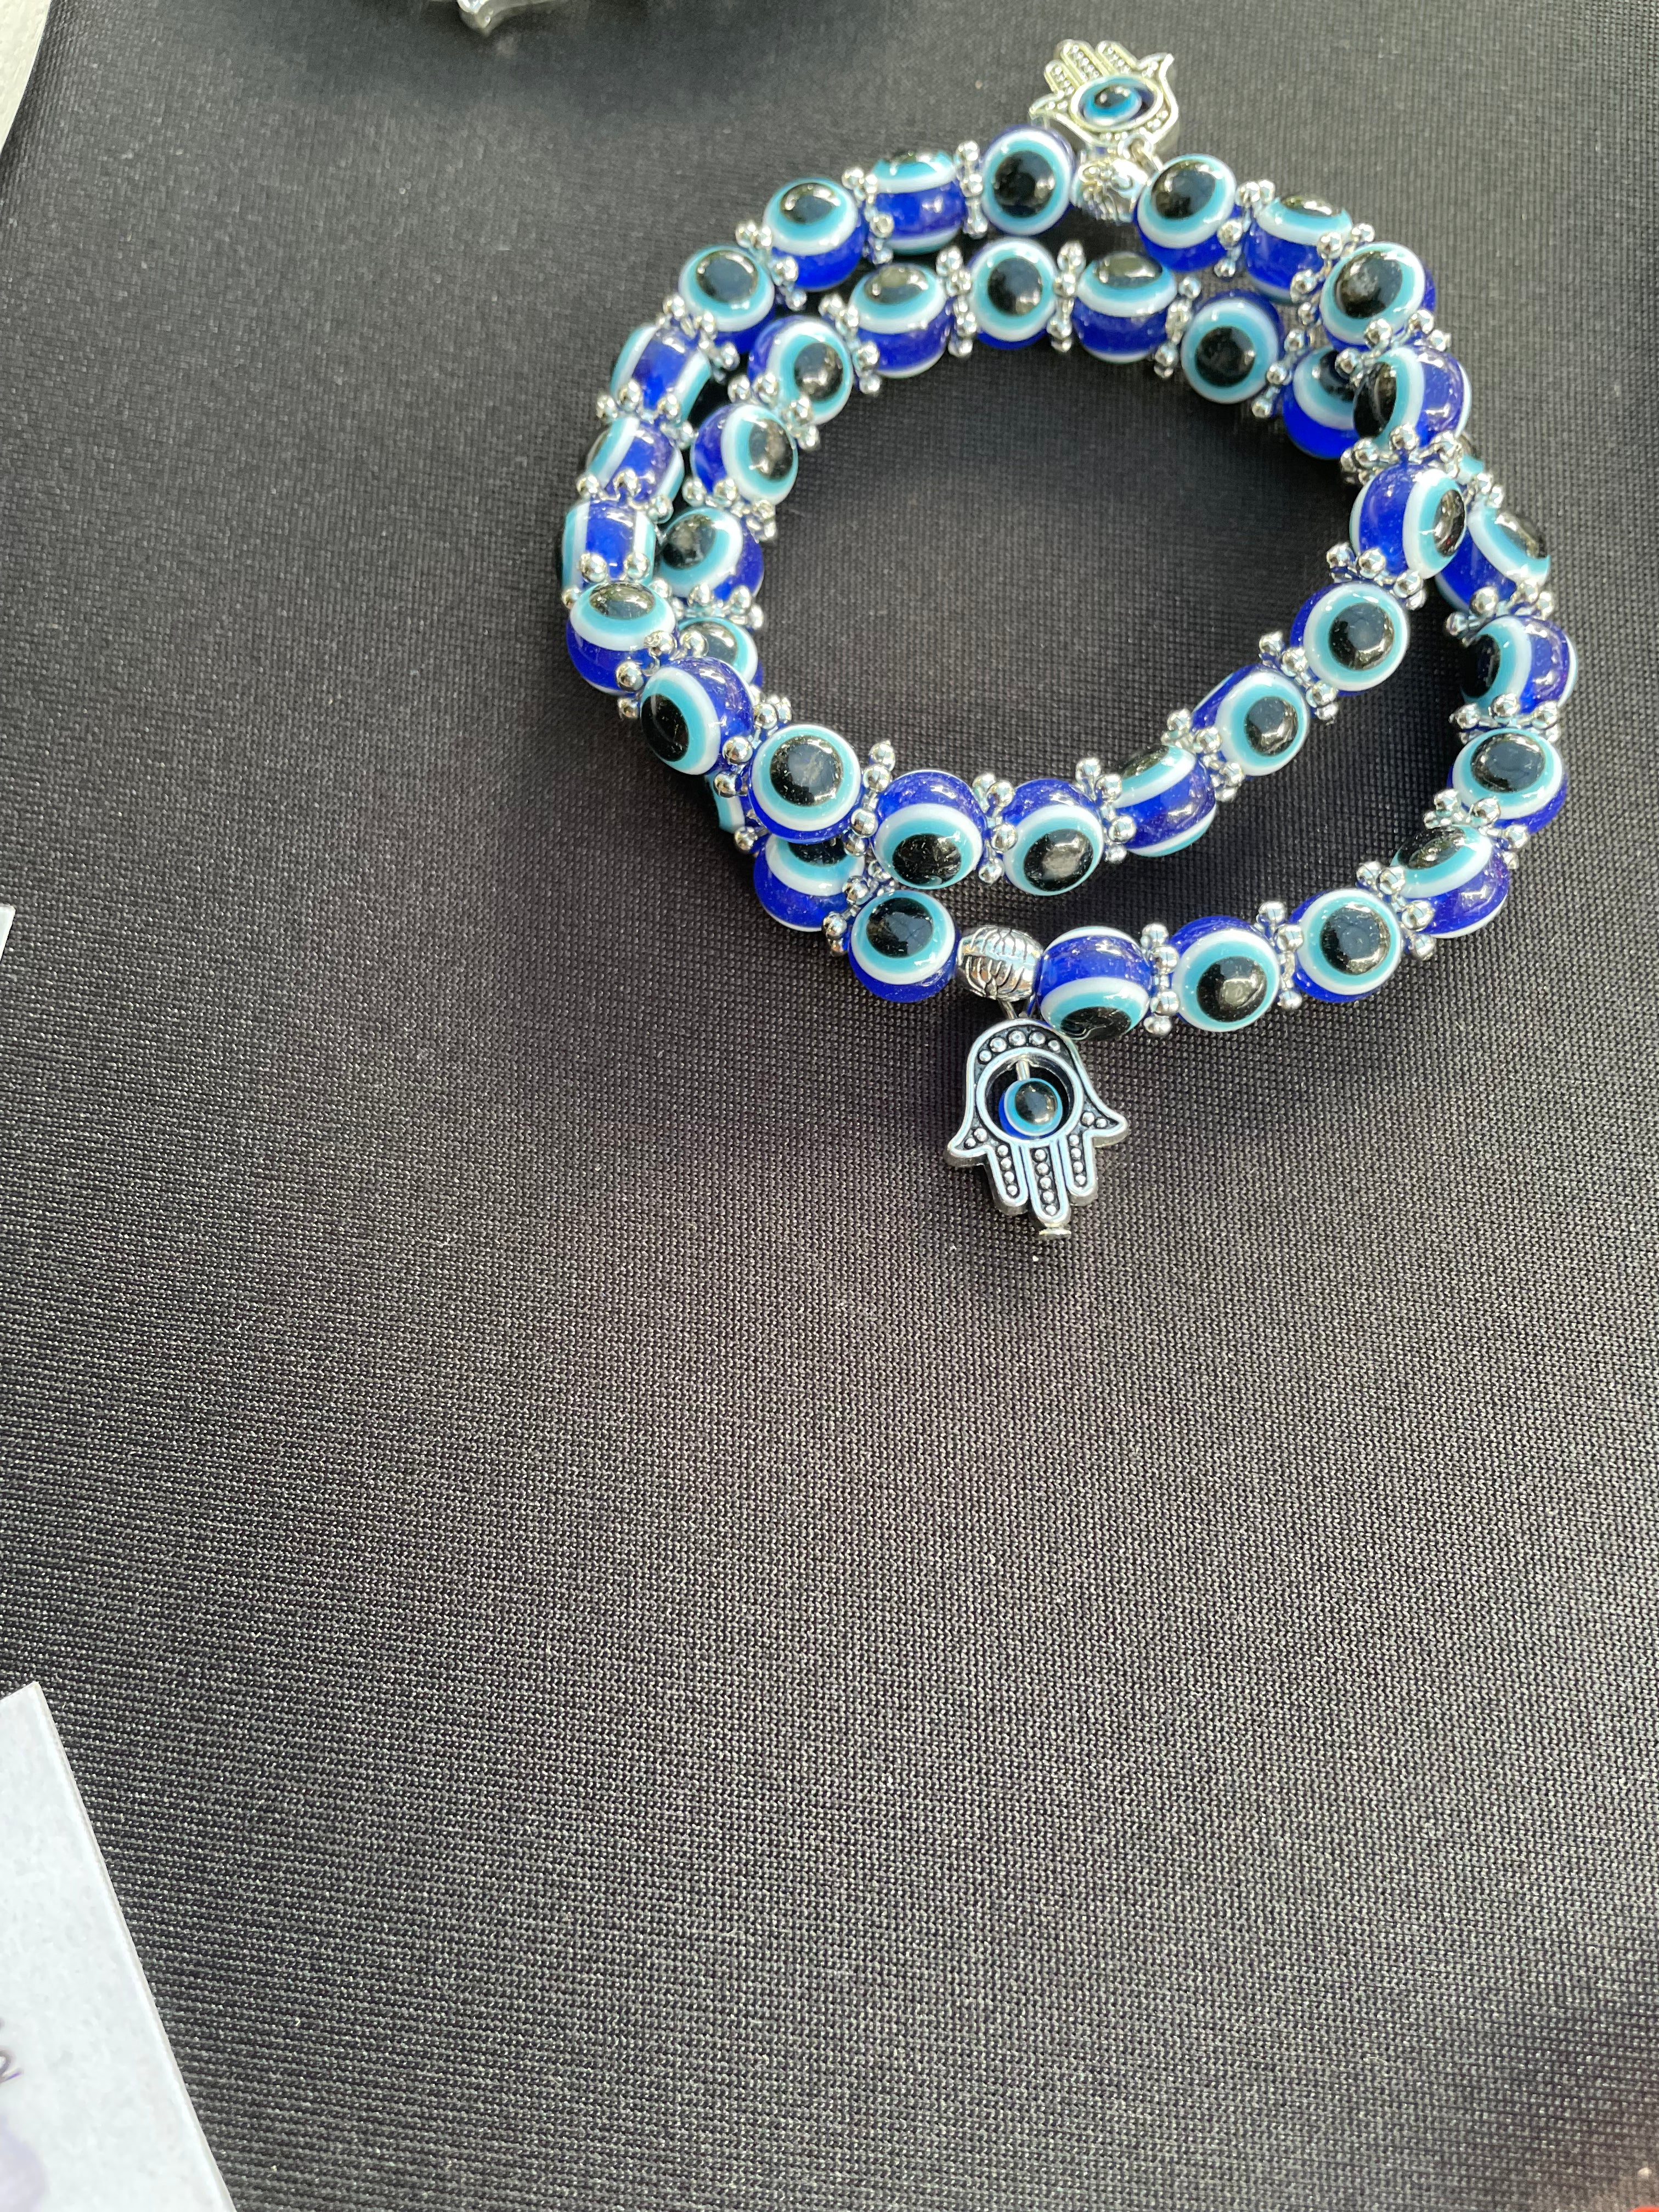 Blue Evil Eye Bracelet